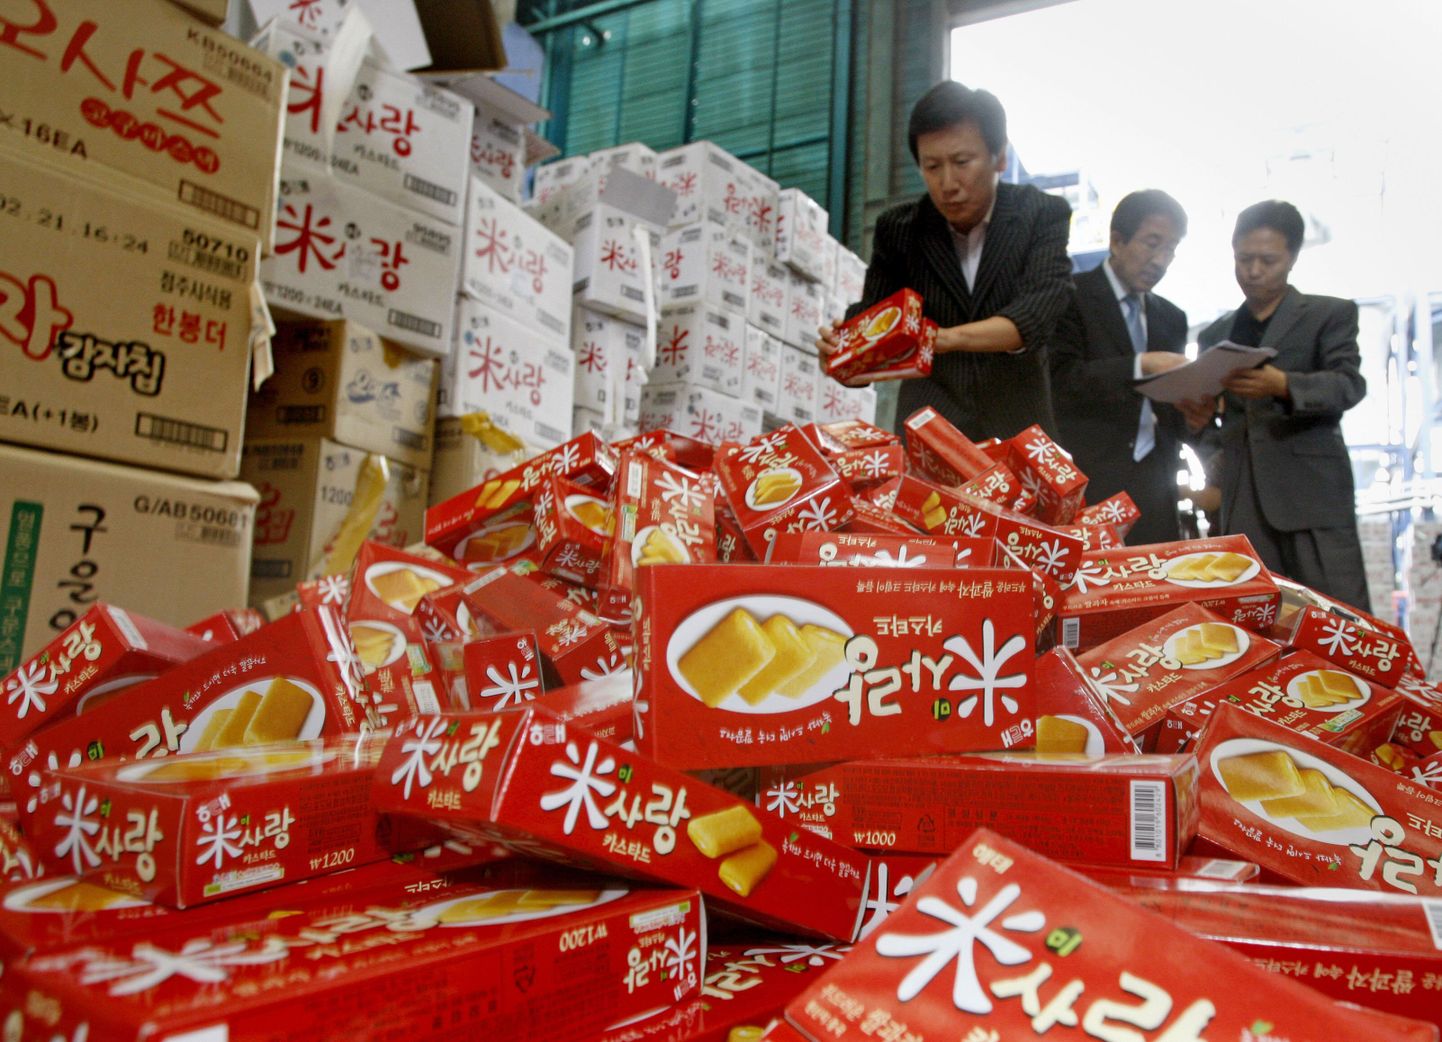 Melamiini tõttu hirmunud Lõuna-Korea ametnikud kontrollivad Lõuna-Souli poes Hiinas valmistatud kooke.